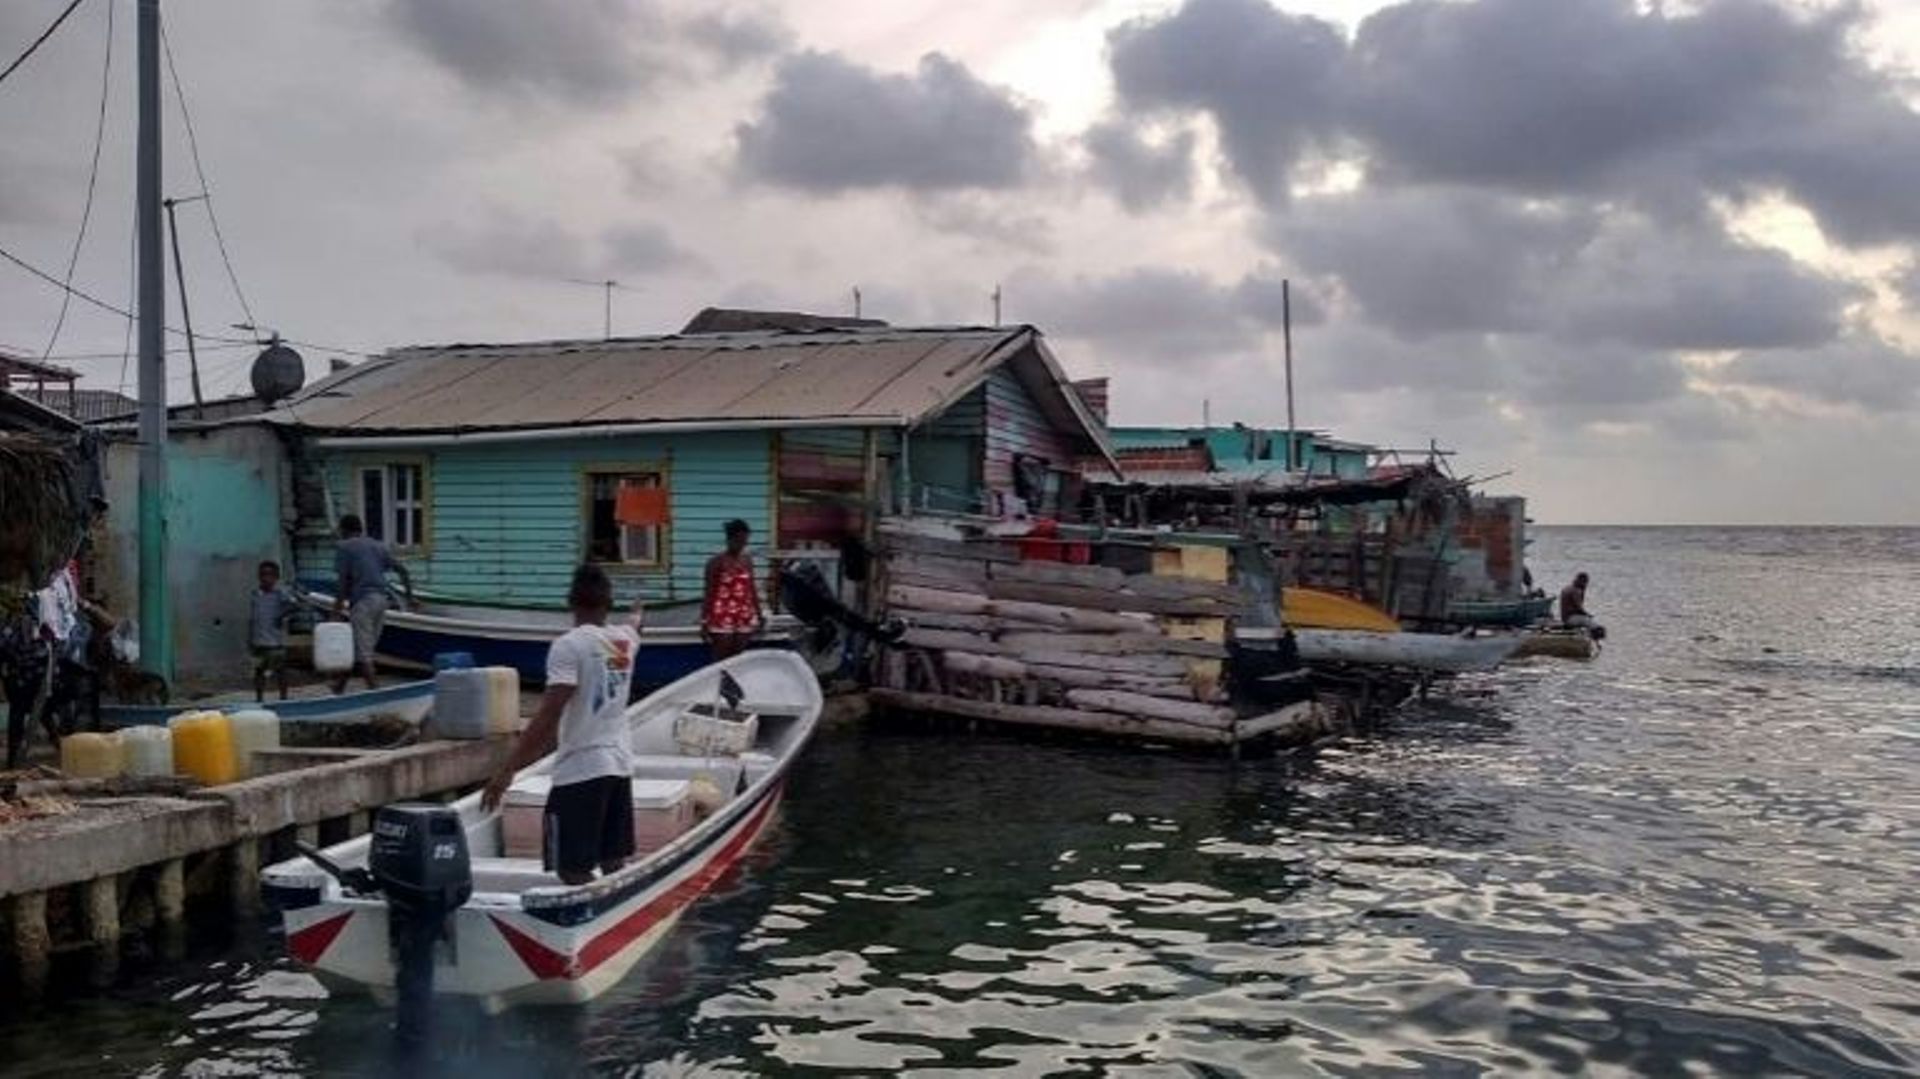 Santa Cruz del Islote, île colombienne des Caraïbes, le 30 juin 2020.